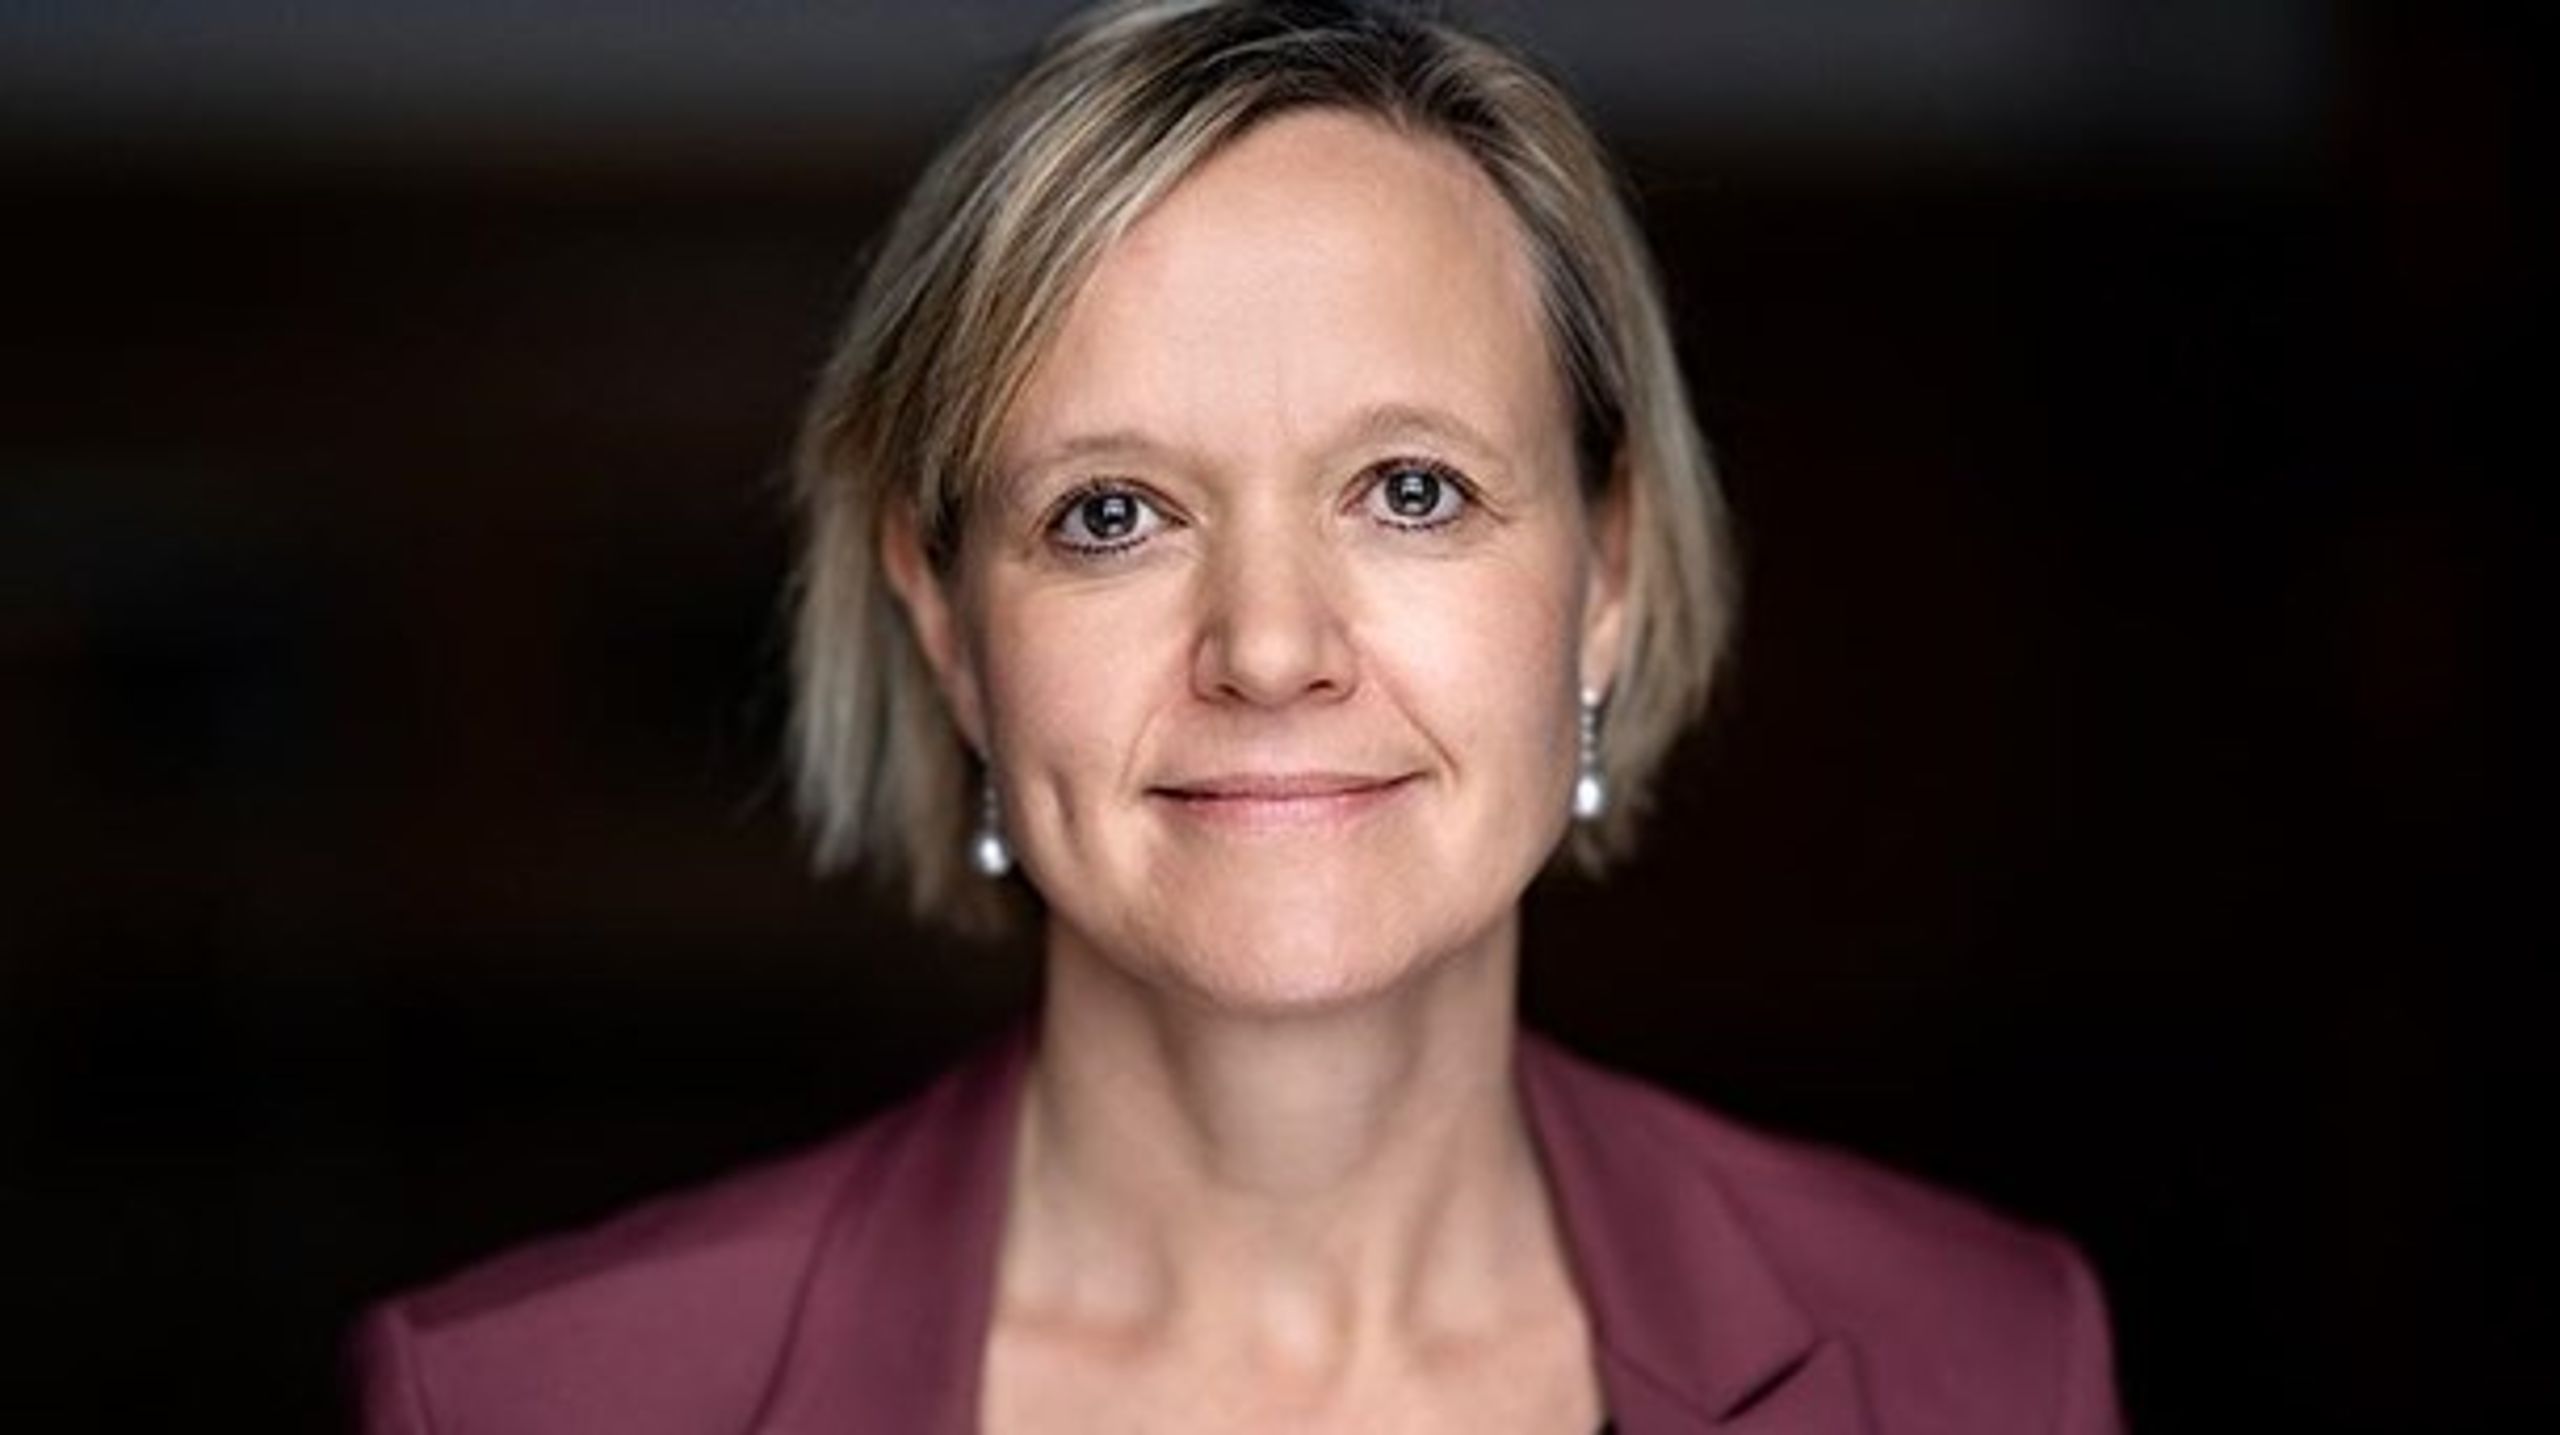 Venstre ser gerne, at administrationen af frikortet bliver billigere, skriver Cecilia Lonning-Skovgaard. (Foto: presse)<br>